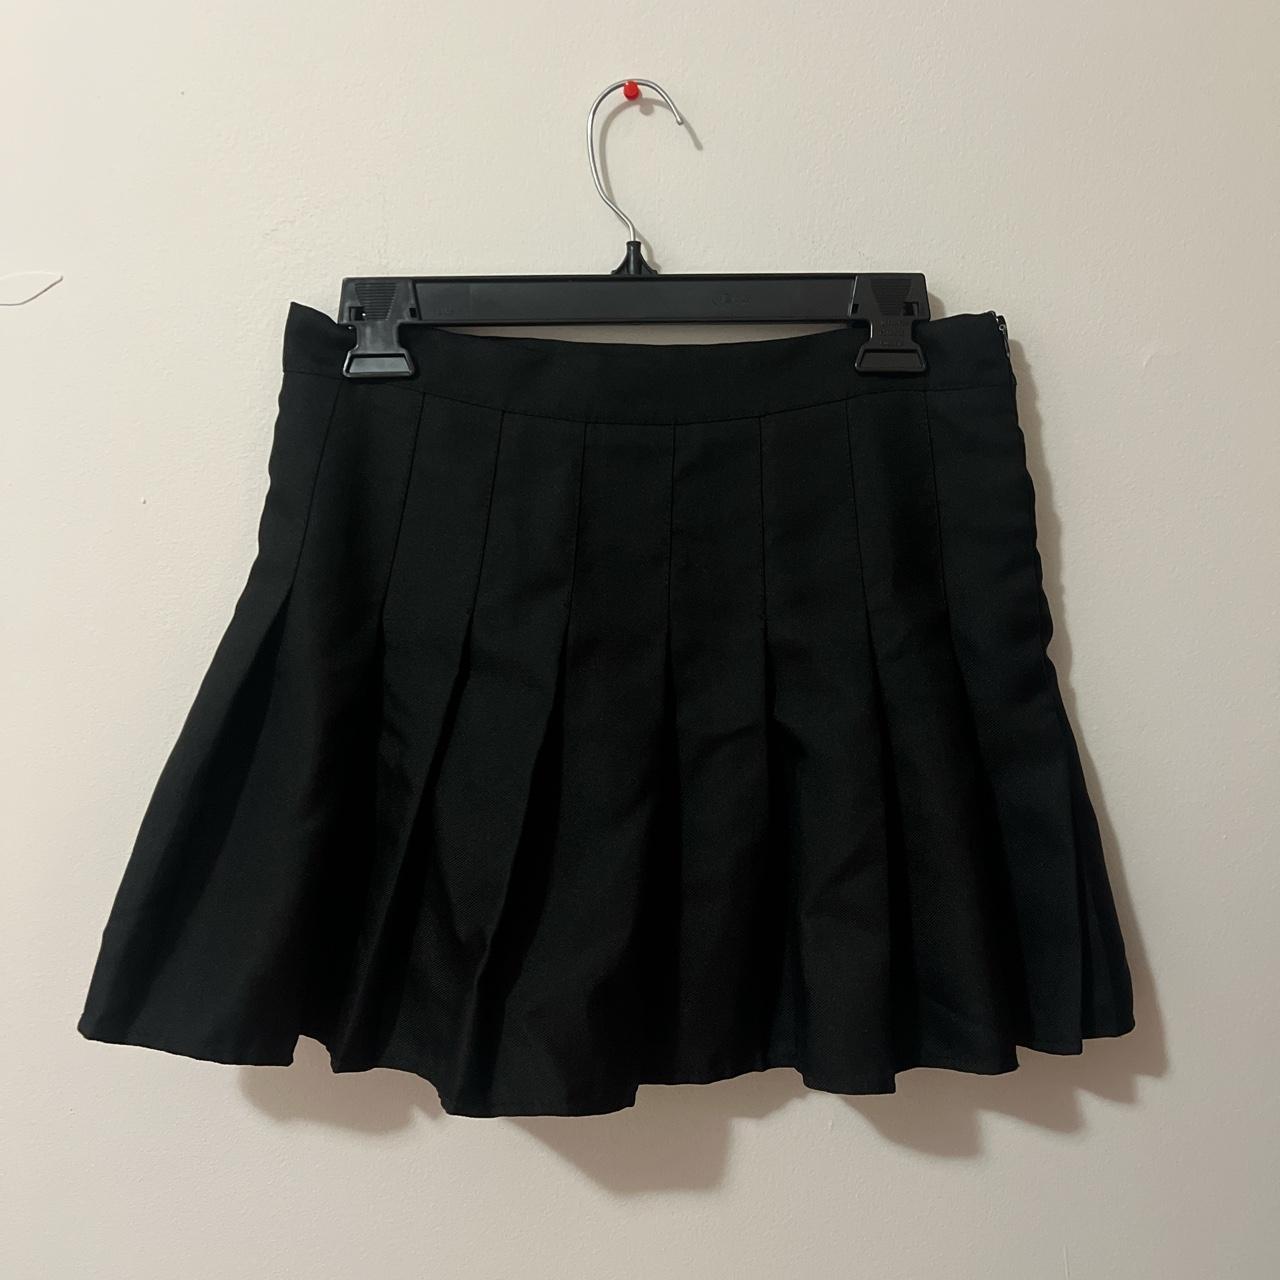 XL black pleated skirt from yesstyle, worn around 5... - Depop